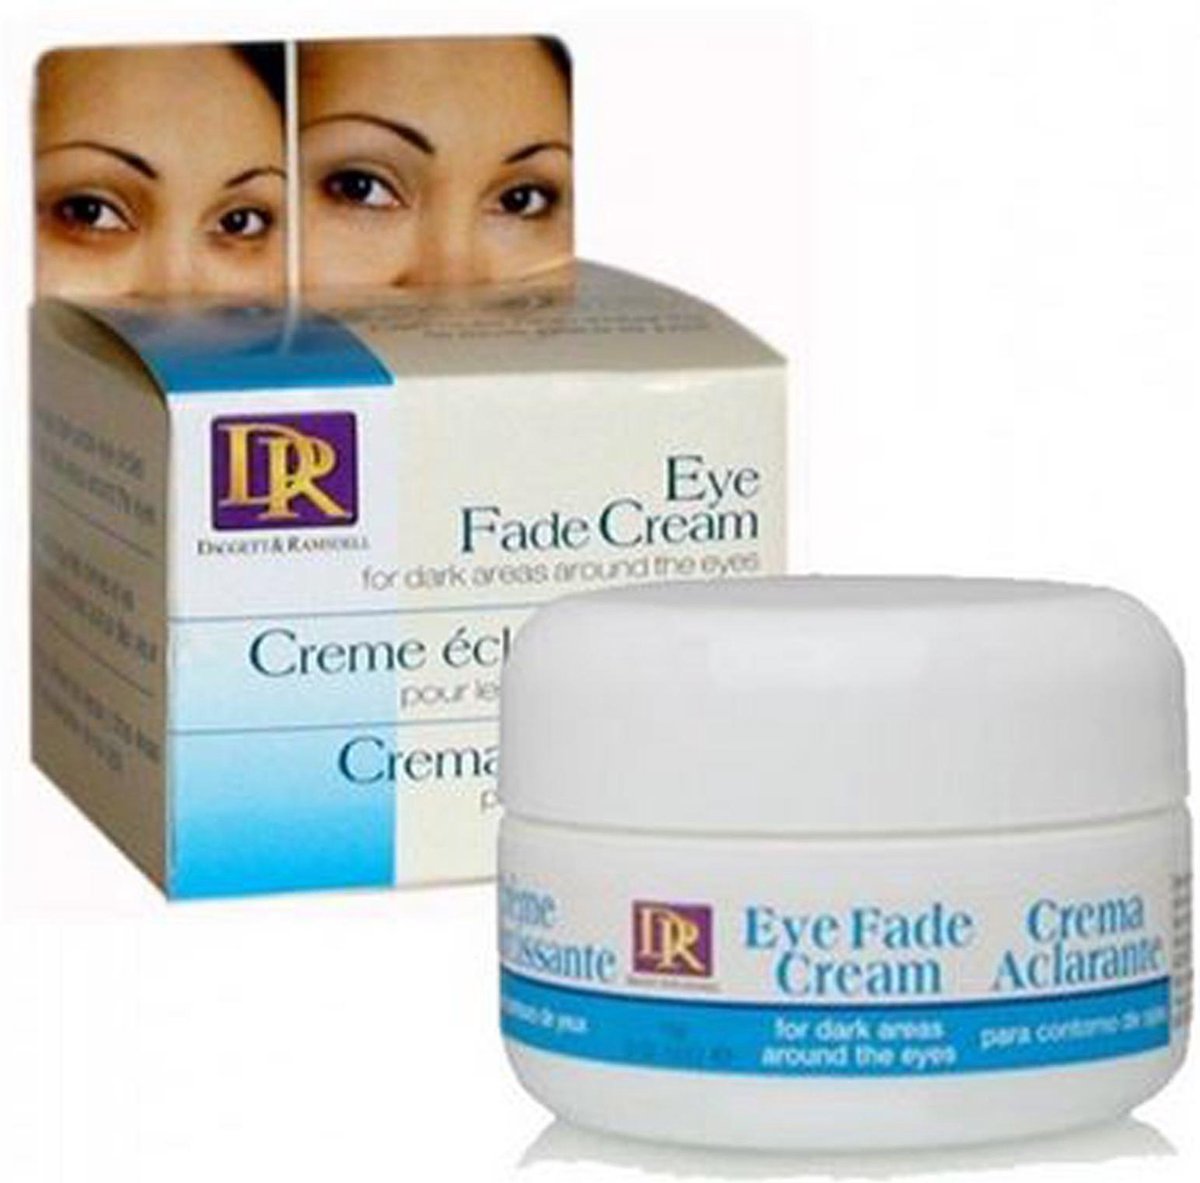 DR Eye Fade Cream 1.5 Oz.